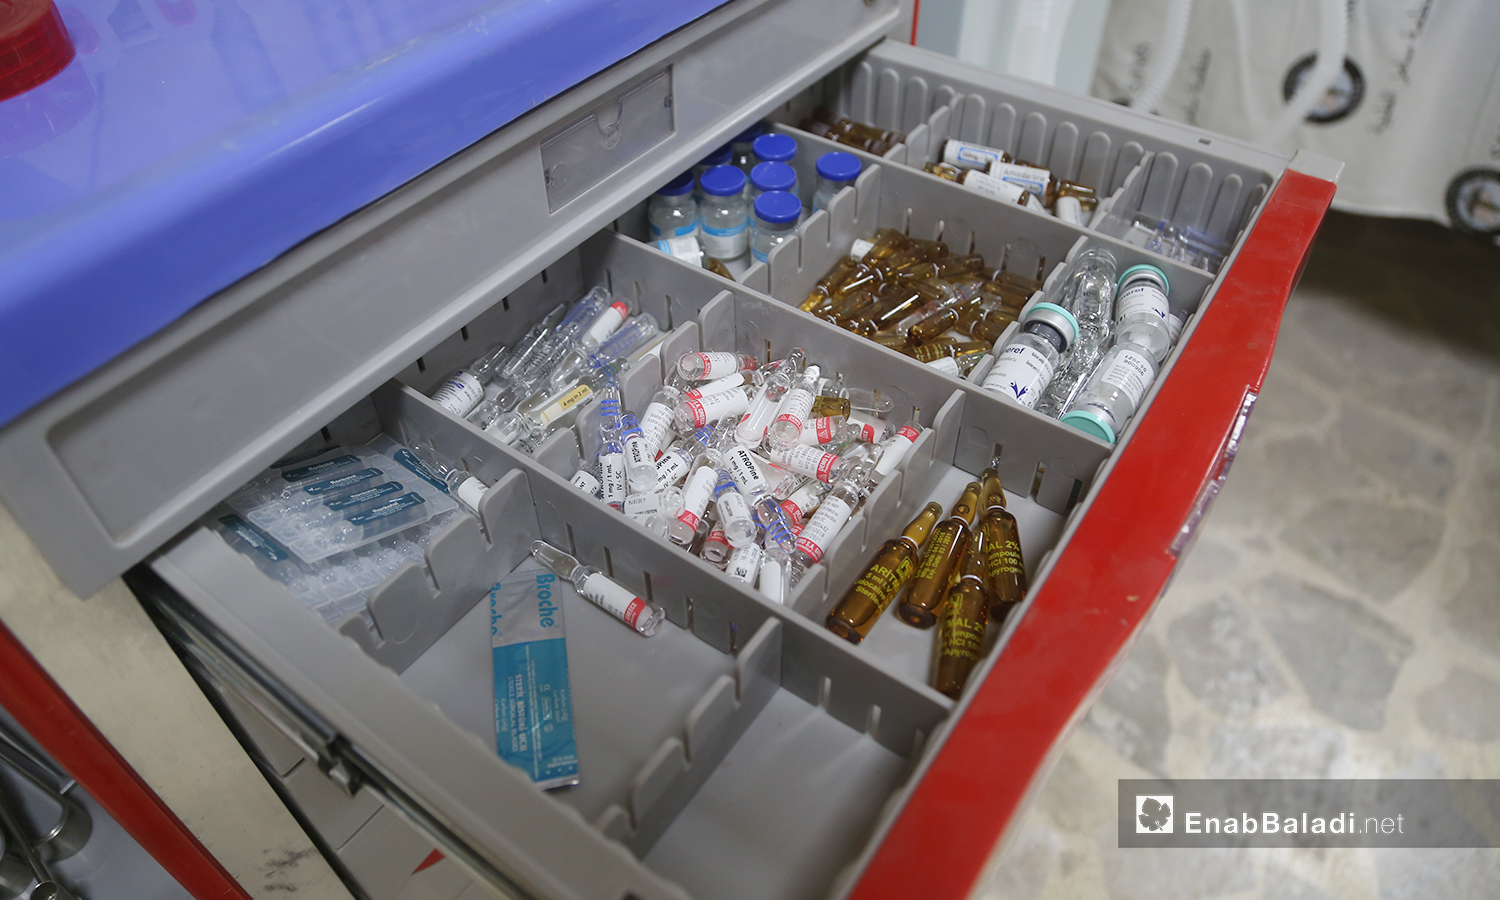 عبوات أدوية في قسم علاج فيروس "كورونا المستجد" في مشفى الزراعة بمدينة إدلب - 14 حزيران 2020 (عنب بلدييوسف غريبي)